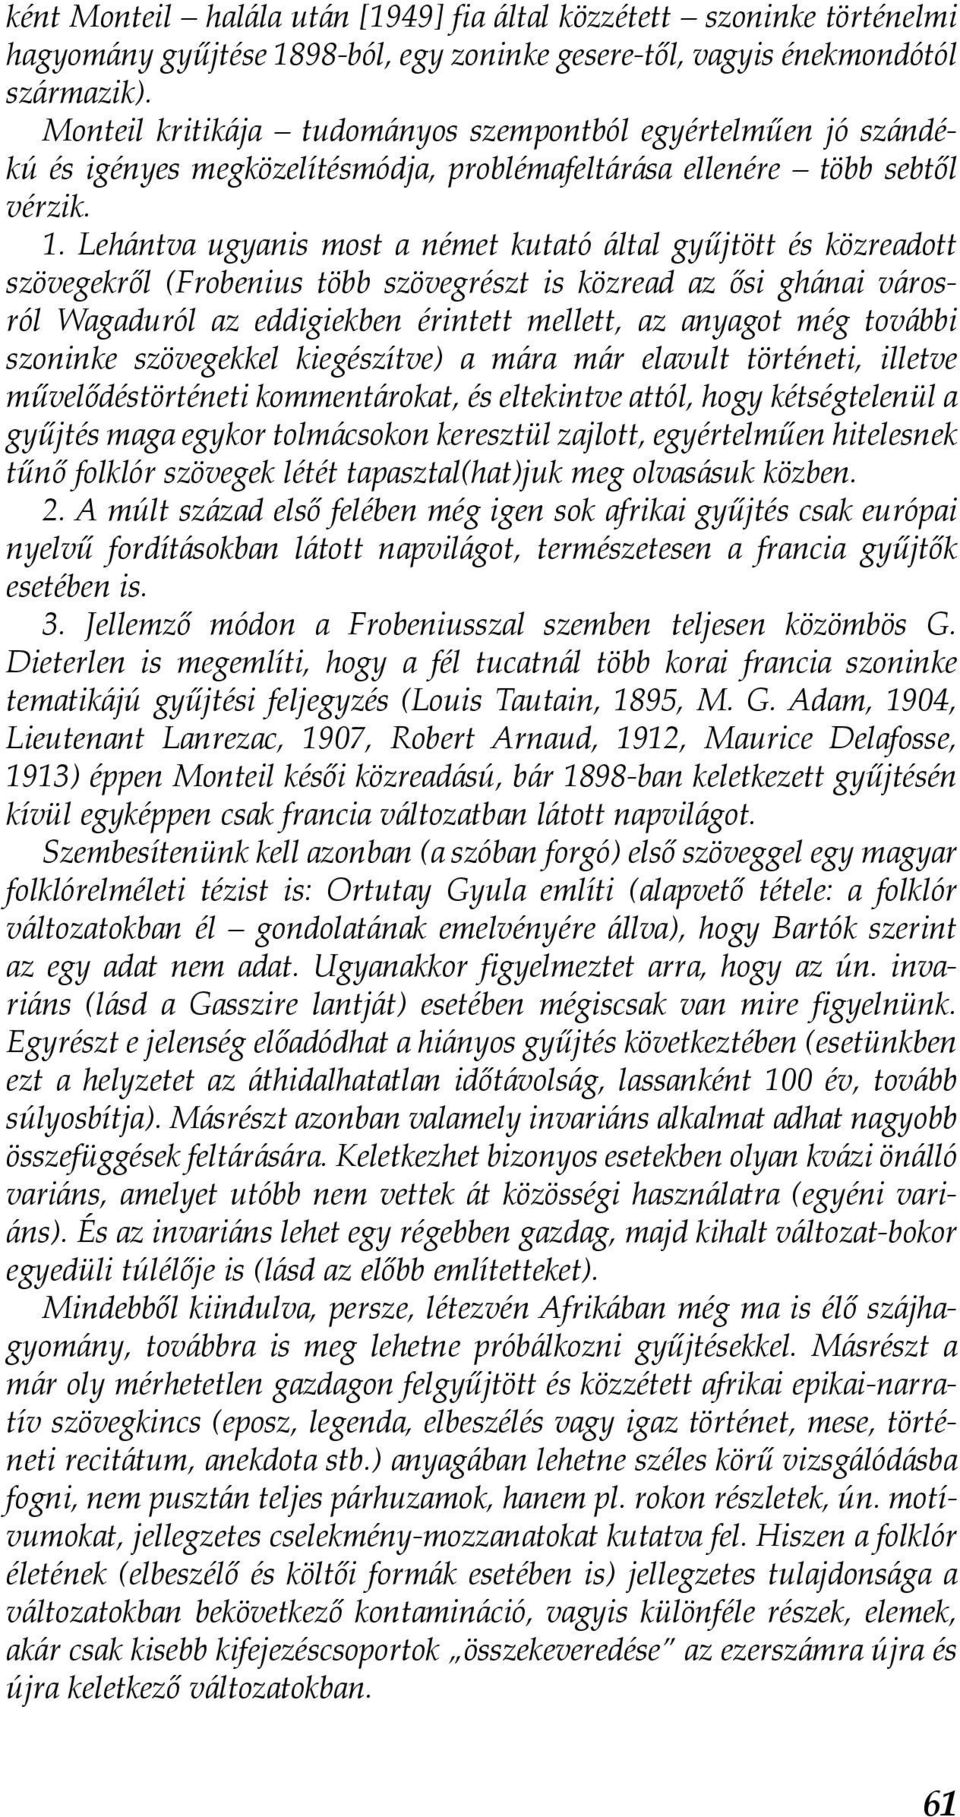 Lehántva ugyanis most a német kutató által gyűjtött és közreadott szövegekről (Frobenius több szövegrészt is közread az ősi ghánai városról Wagaduról az eddigiekben érintett mellett, az anyagot még